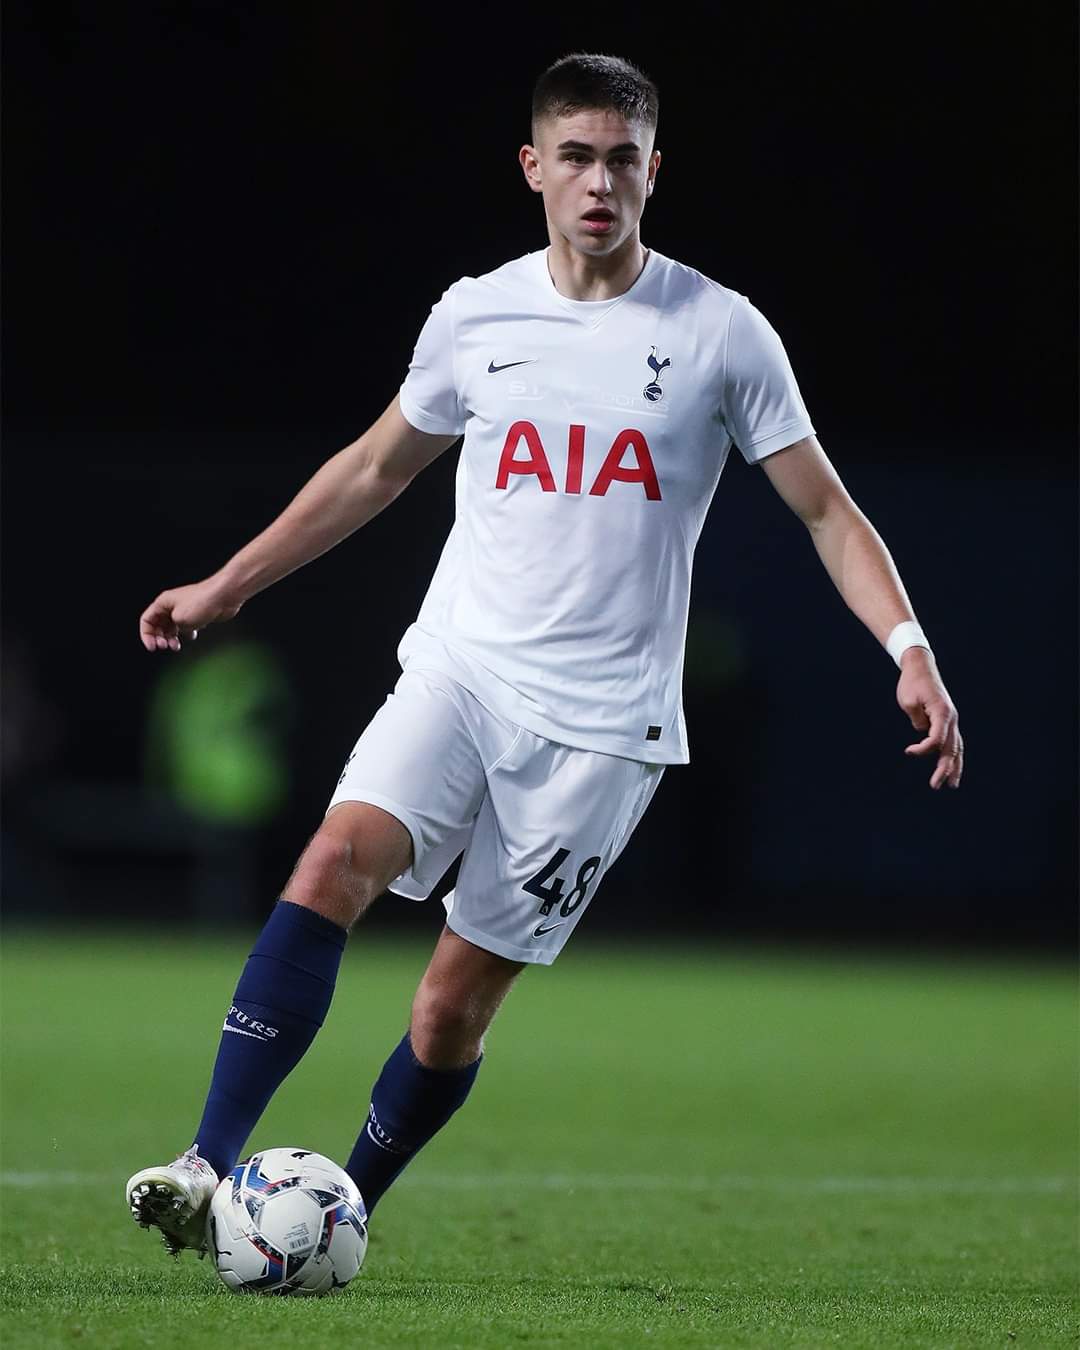 Son Heung-min, Tottenham Hotspur Wiki